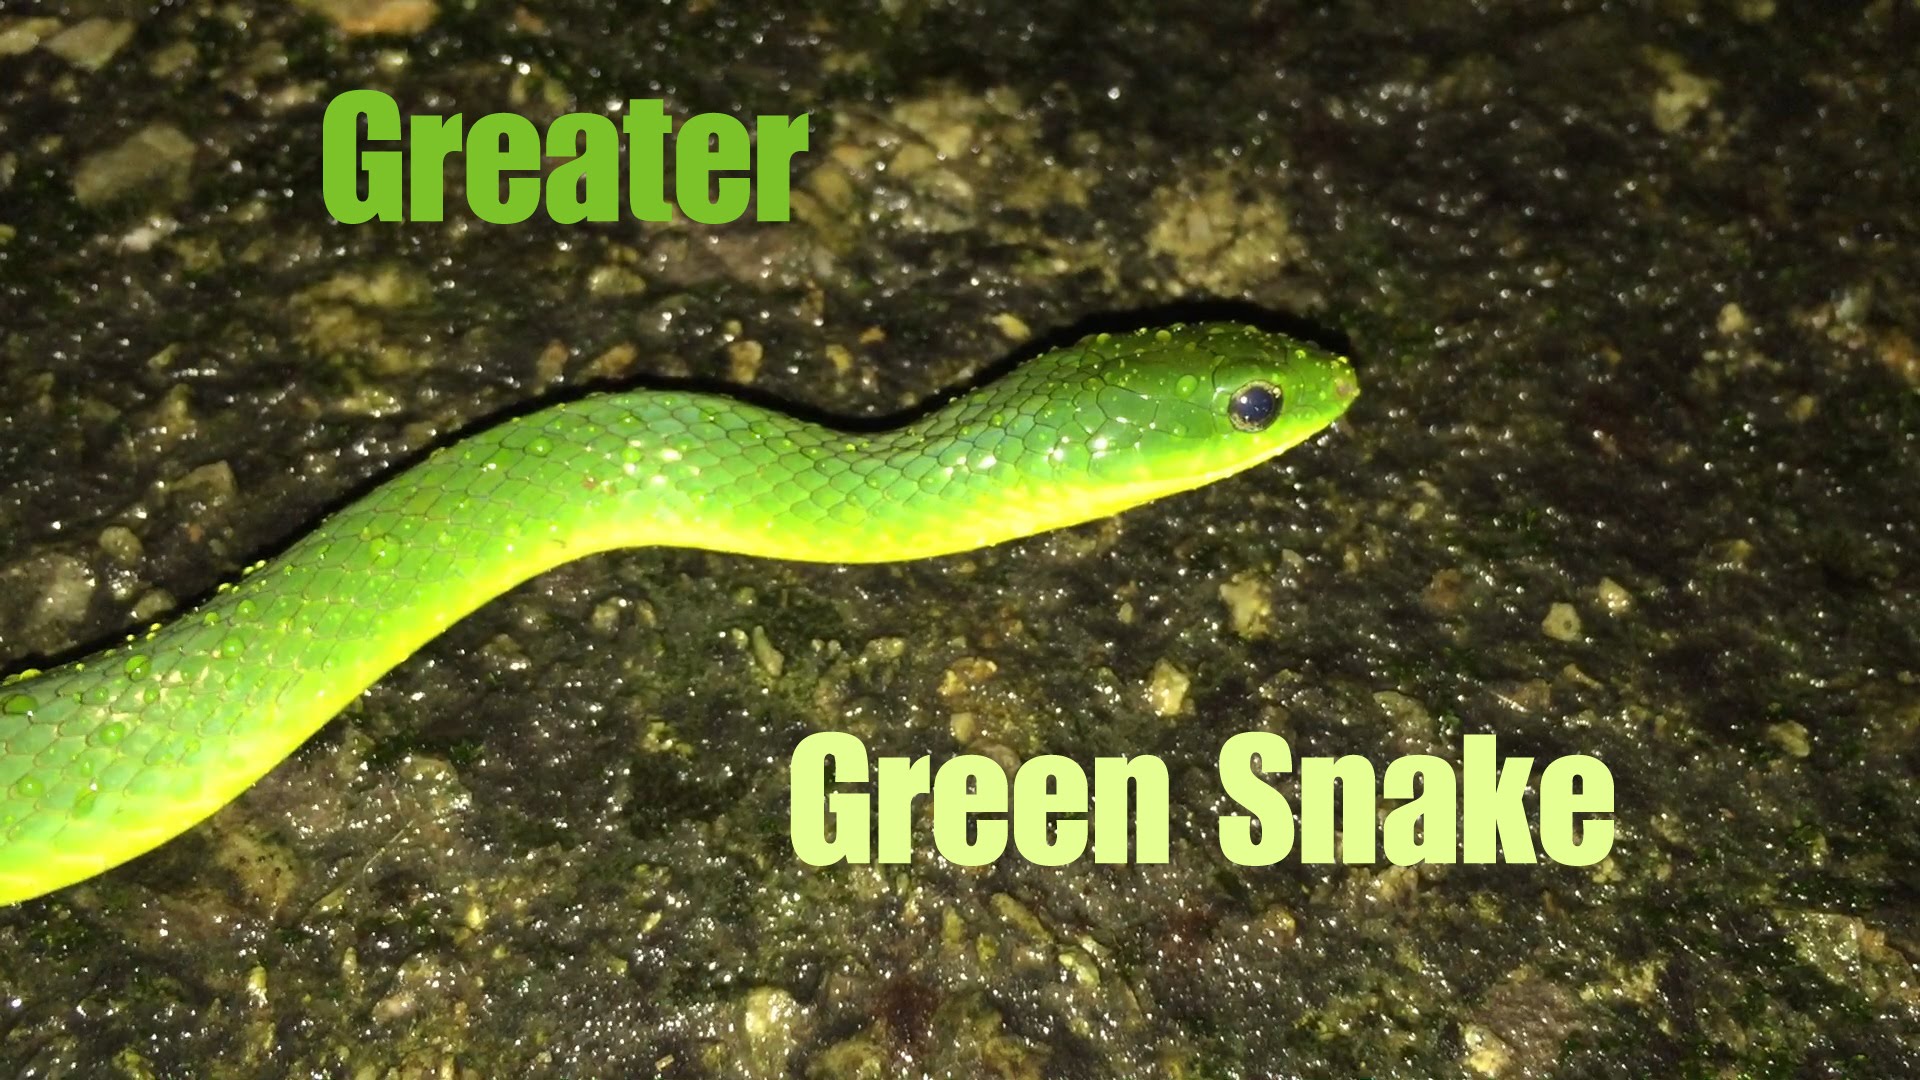 Greater Green Snake - YouTube